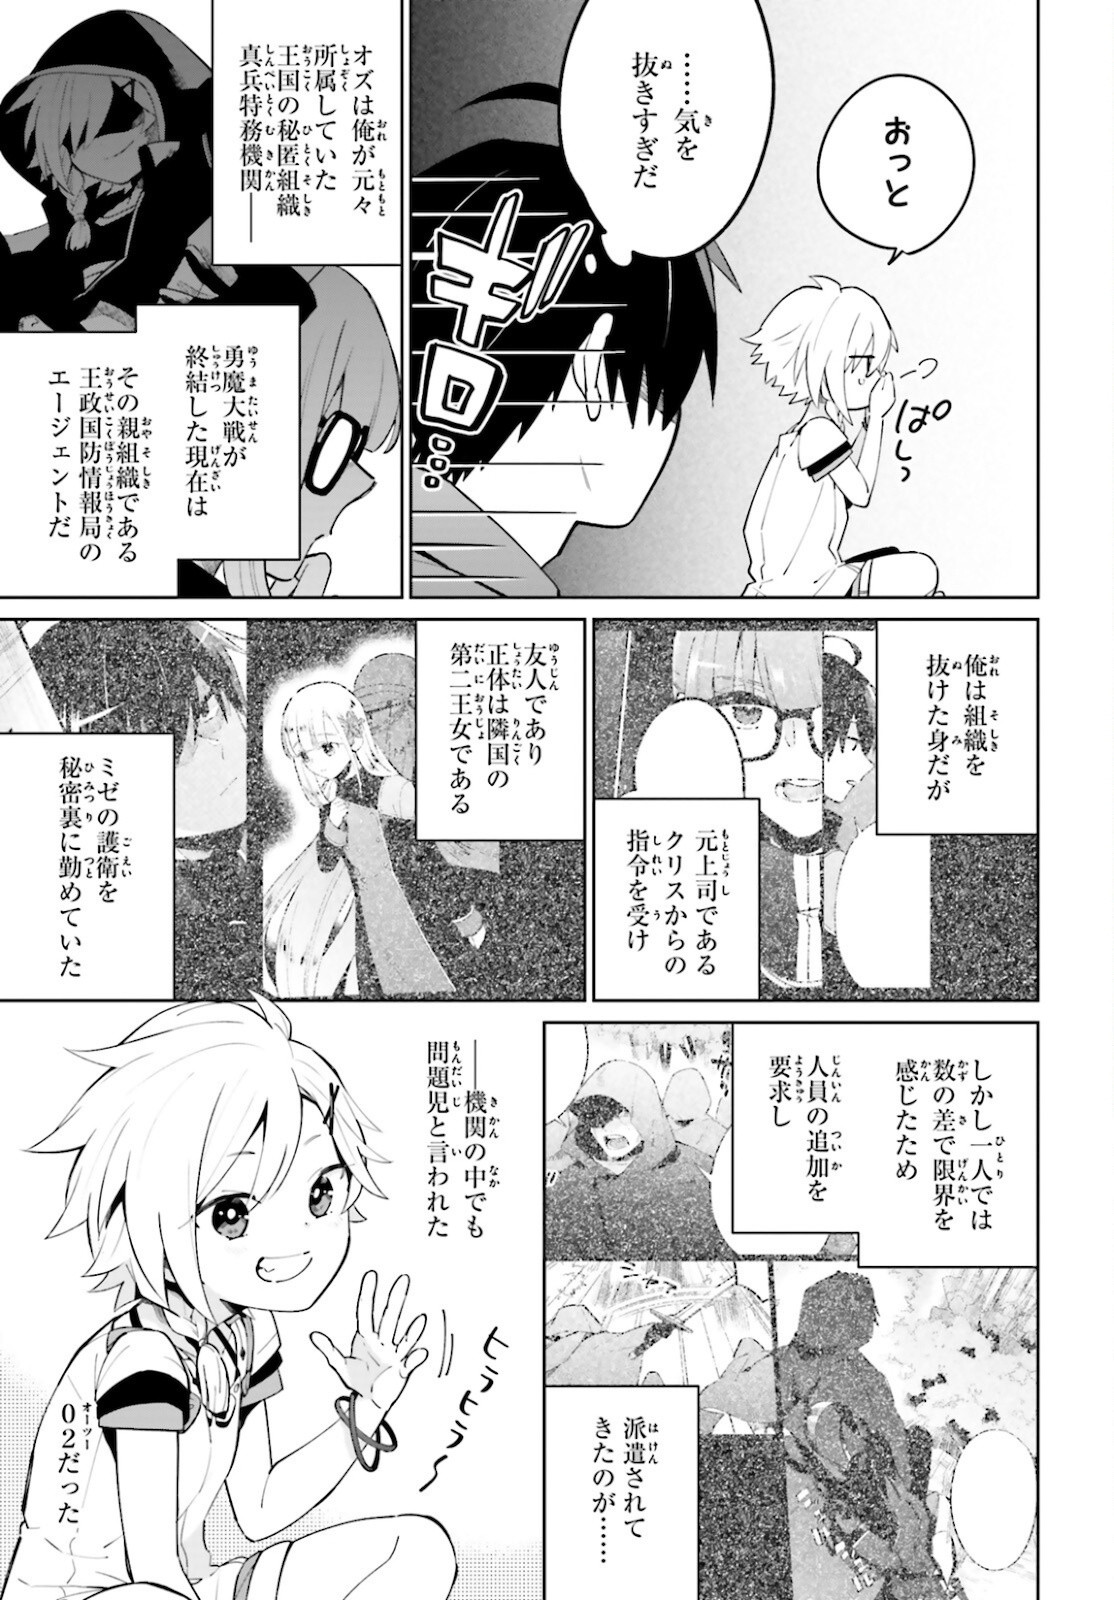 Kage-no-Eiyuu-no-Nichijou-tan-Ichi-no-Yuusha-no-Ura-de-An'yaku-Shite-ita-Saikyou-no-Eijento-Soshiki-ga-Kaitai-sareta-no-de-Shoutai-Kakushite-Hito-nami-no-Nichijou-o-Ouka-suru - Chapter 14 - Page 3